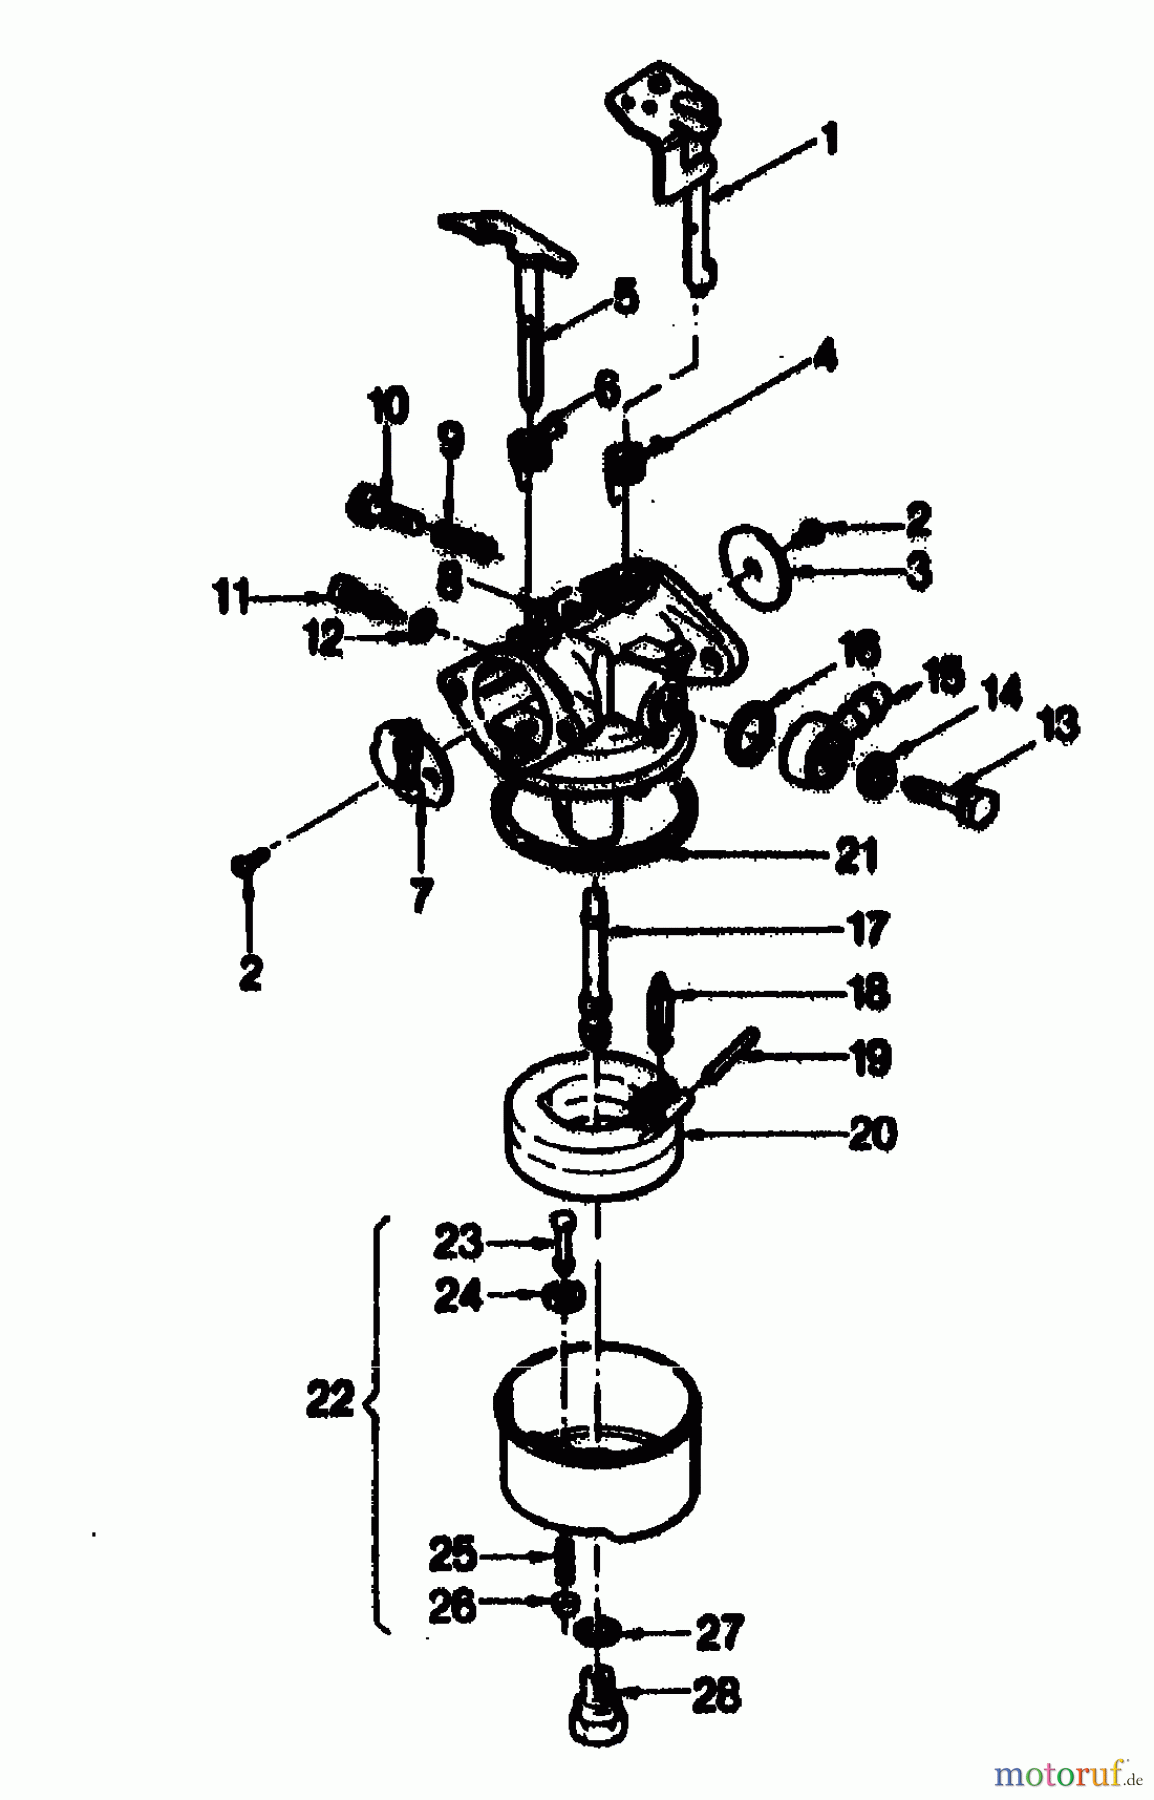  Gutbrod Tondeuse thermique tractée HB 47 R 02847.01  (1989) Carburateur